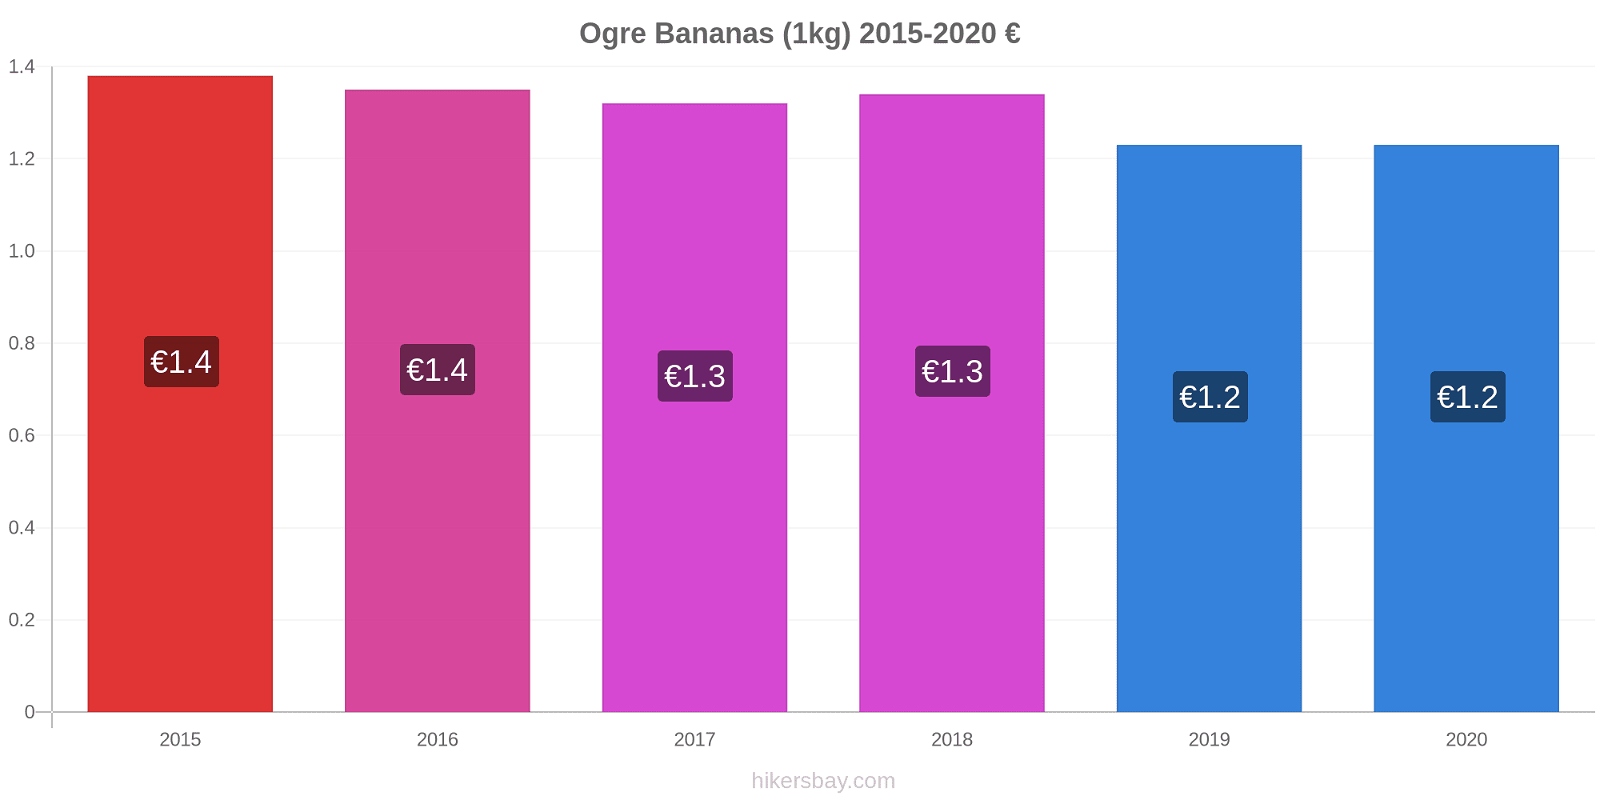 Ogre price changes Bananas (1kg) hikersbay.com